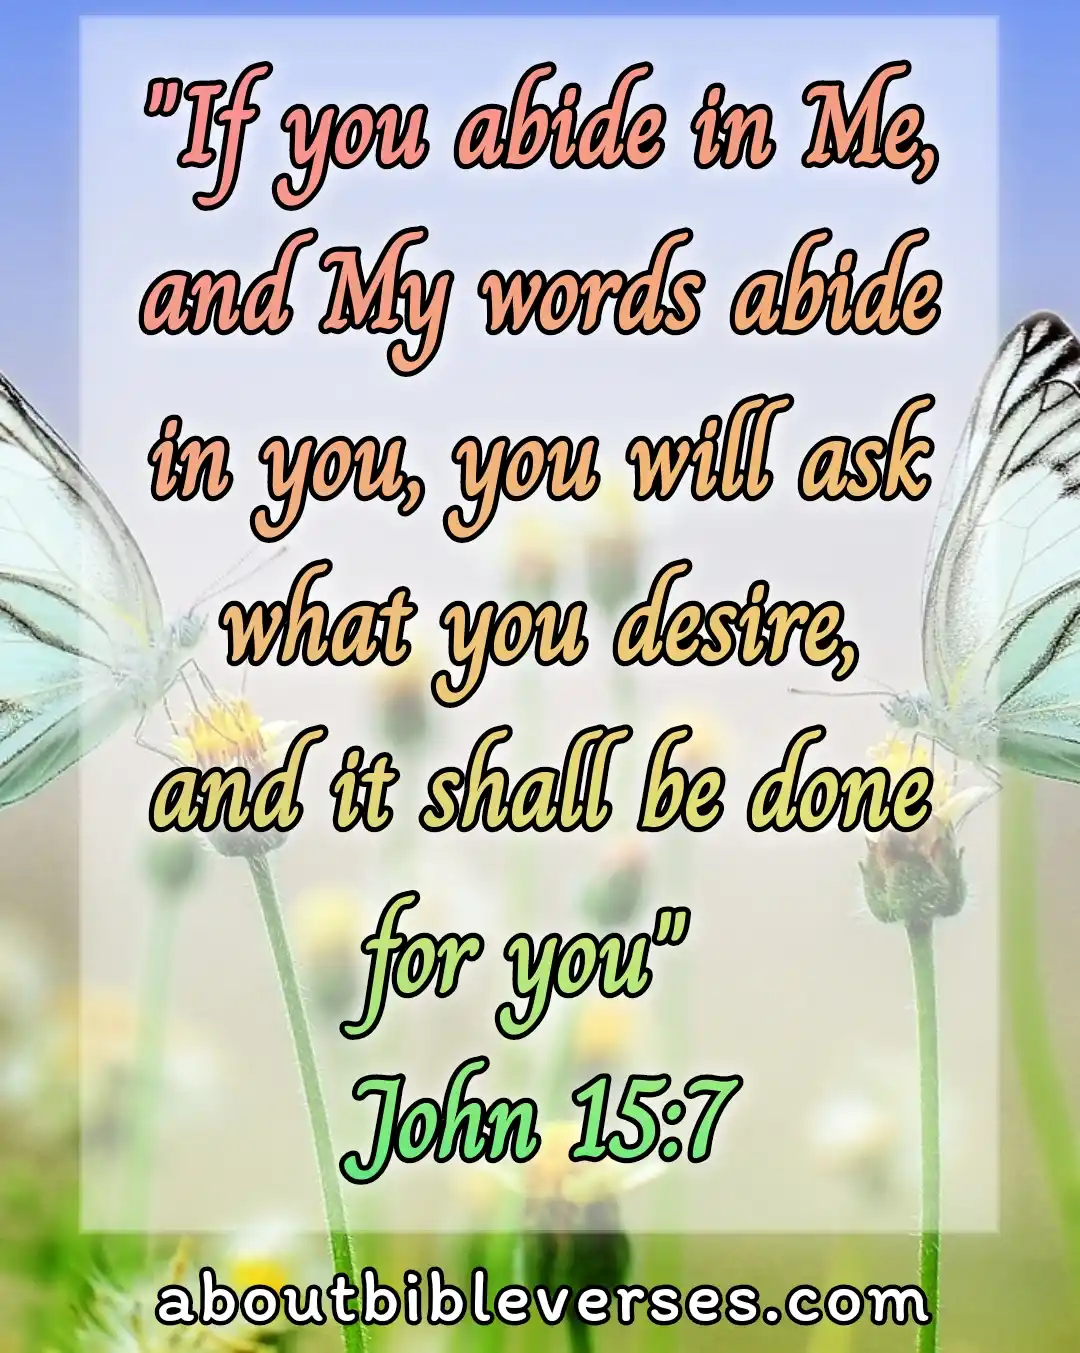 today bible verse (John 15:7)